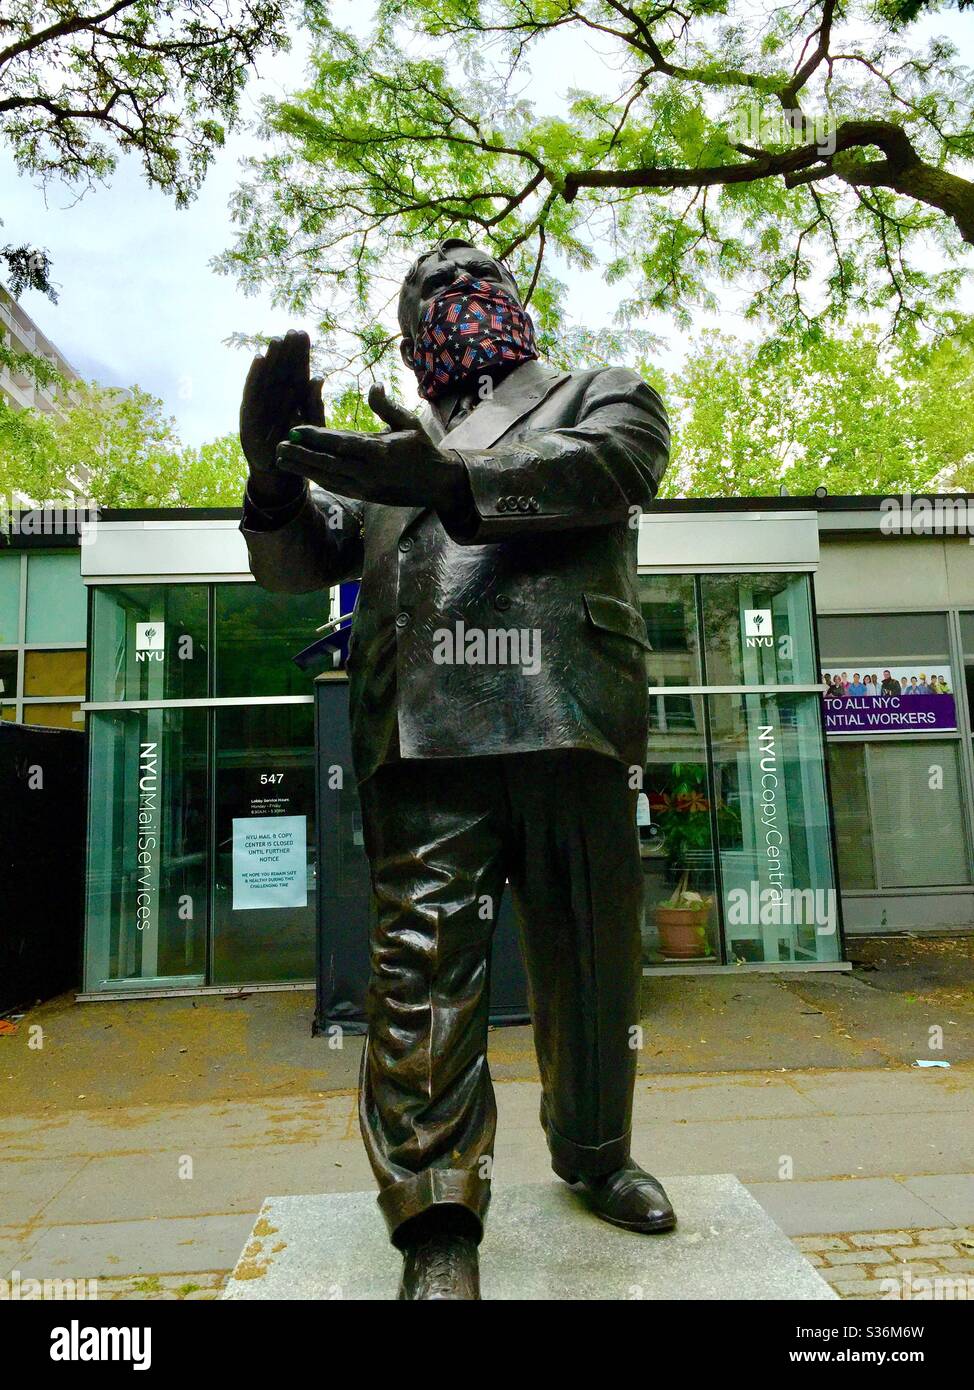 Statue de Fiorello H LaGuardia portant un masque patriotique de coronavirus pendant la pandémie sur LaGuardia place, New York City, Etats-Unis Banque D'Images